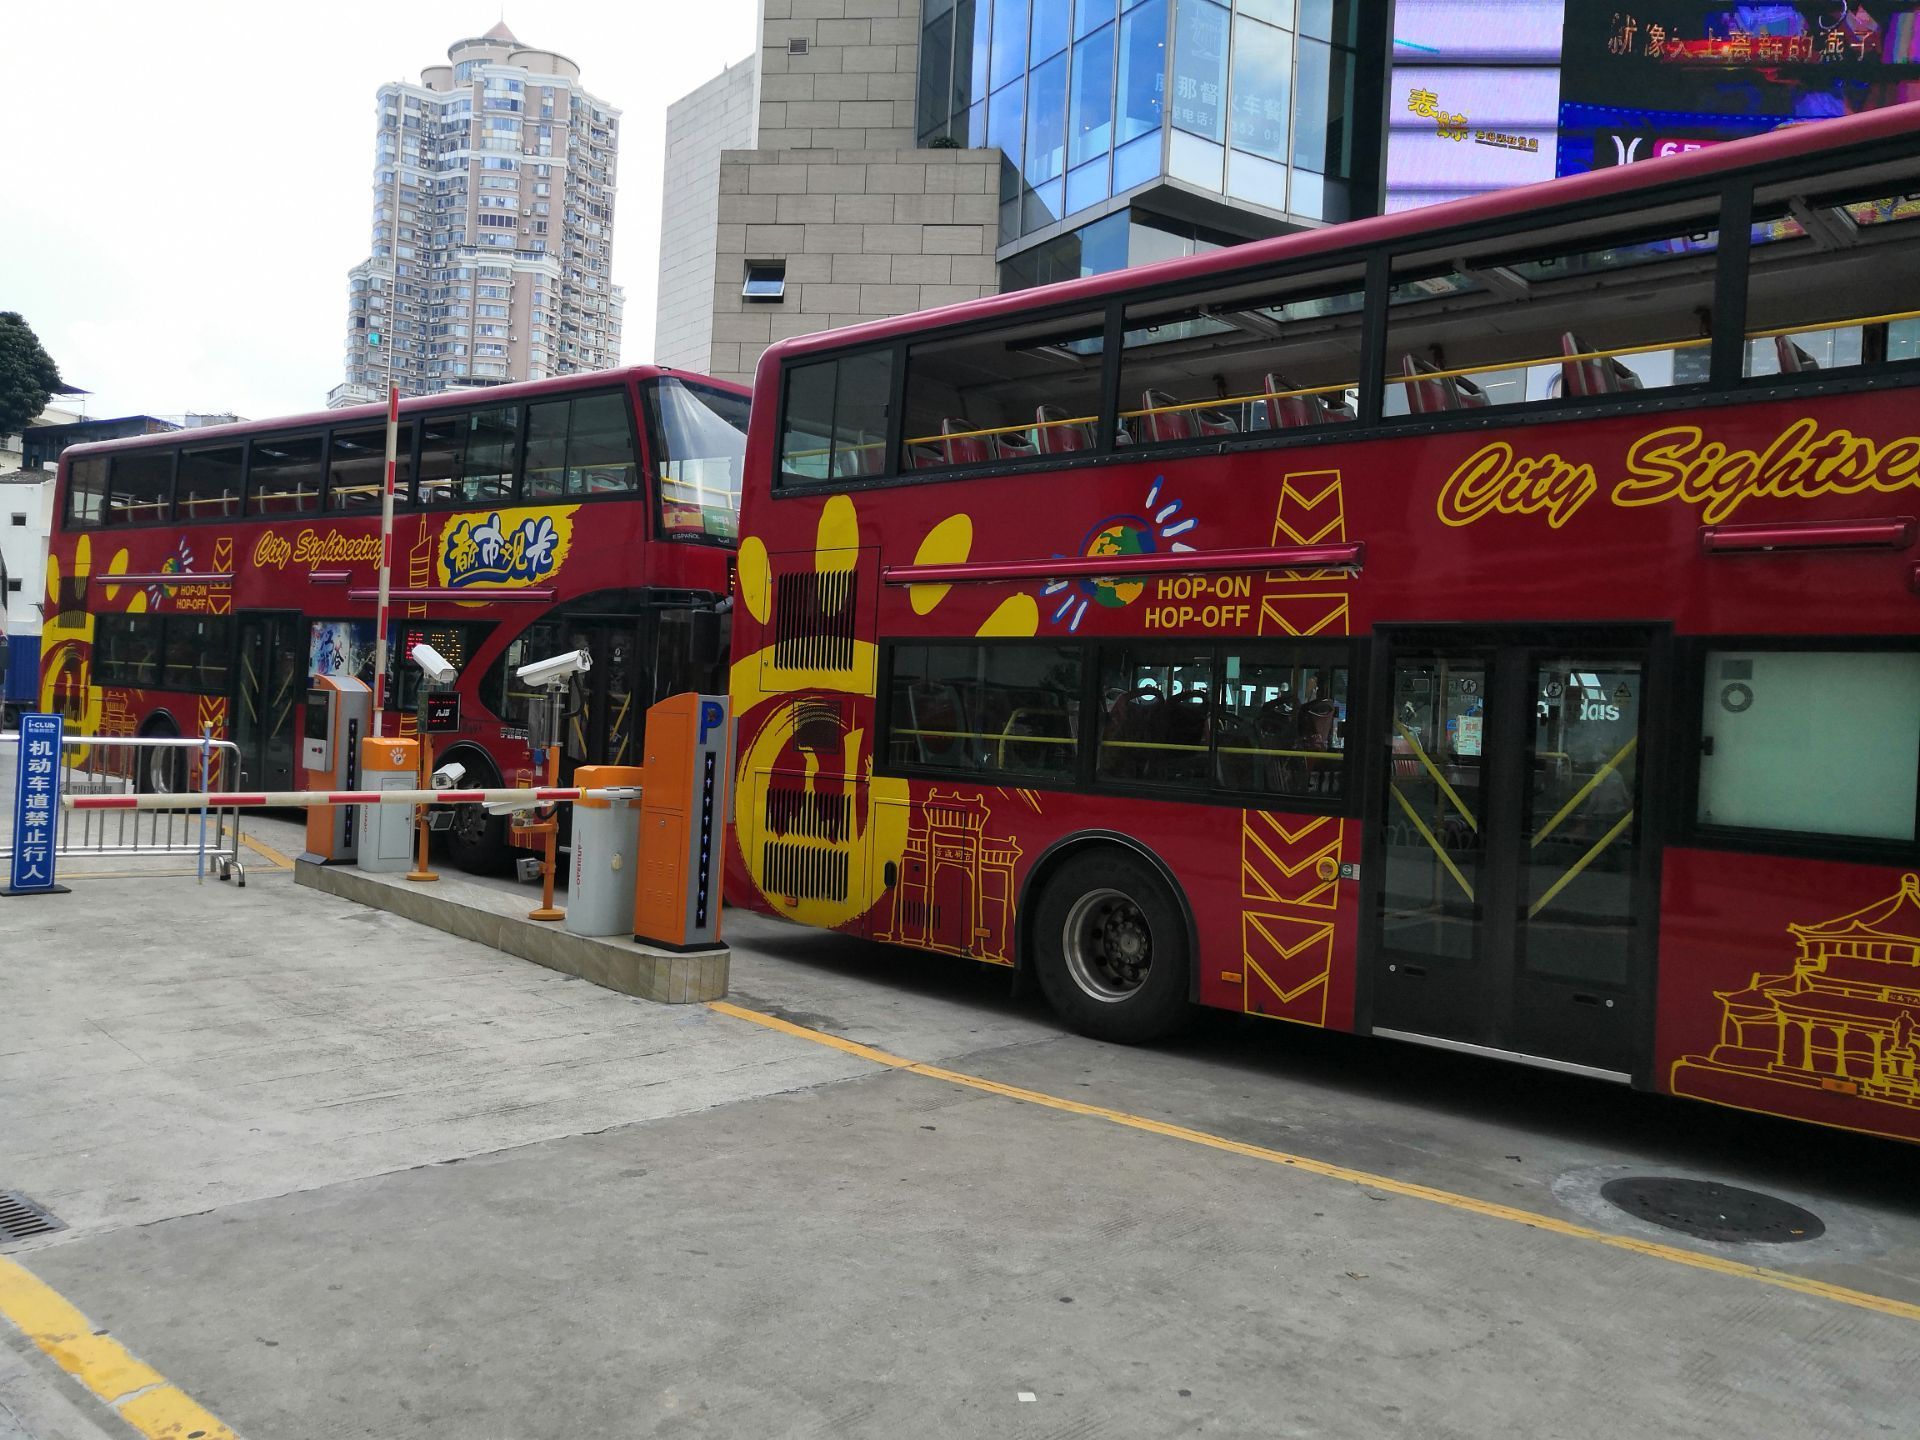 广州都市双层观光巴士24小时各景点多次上下车50元一人夜线票30元一人